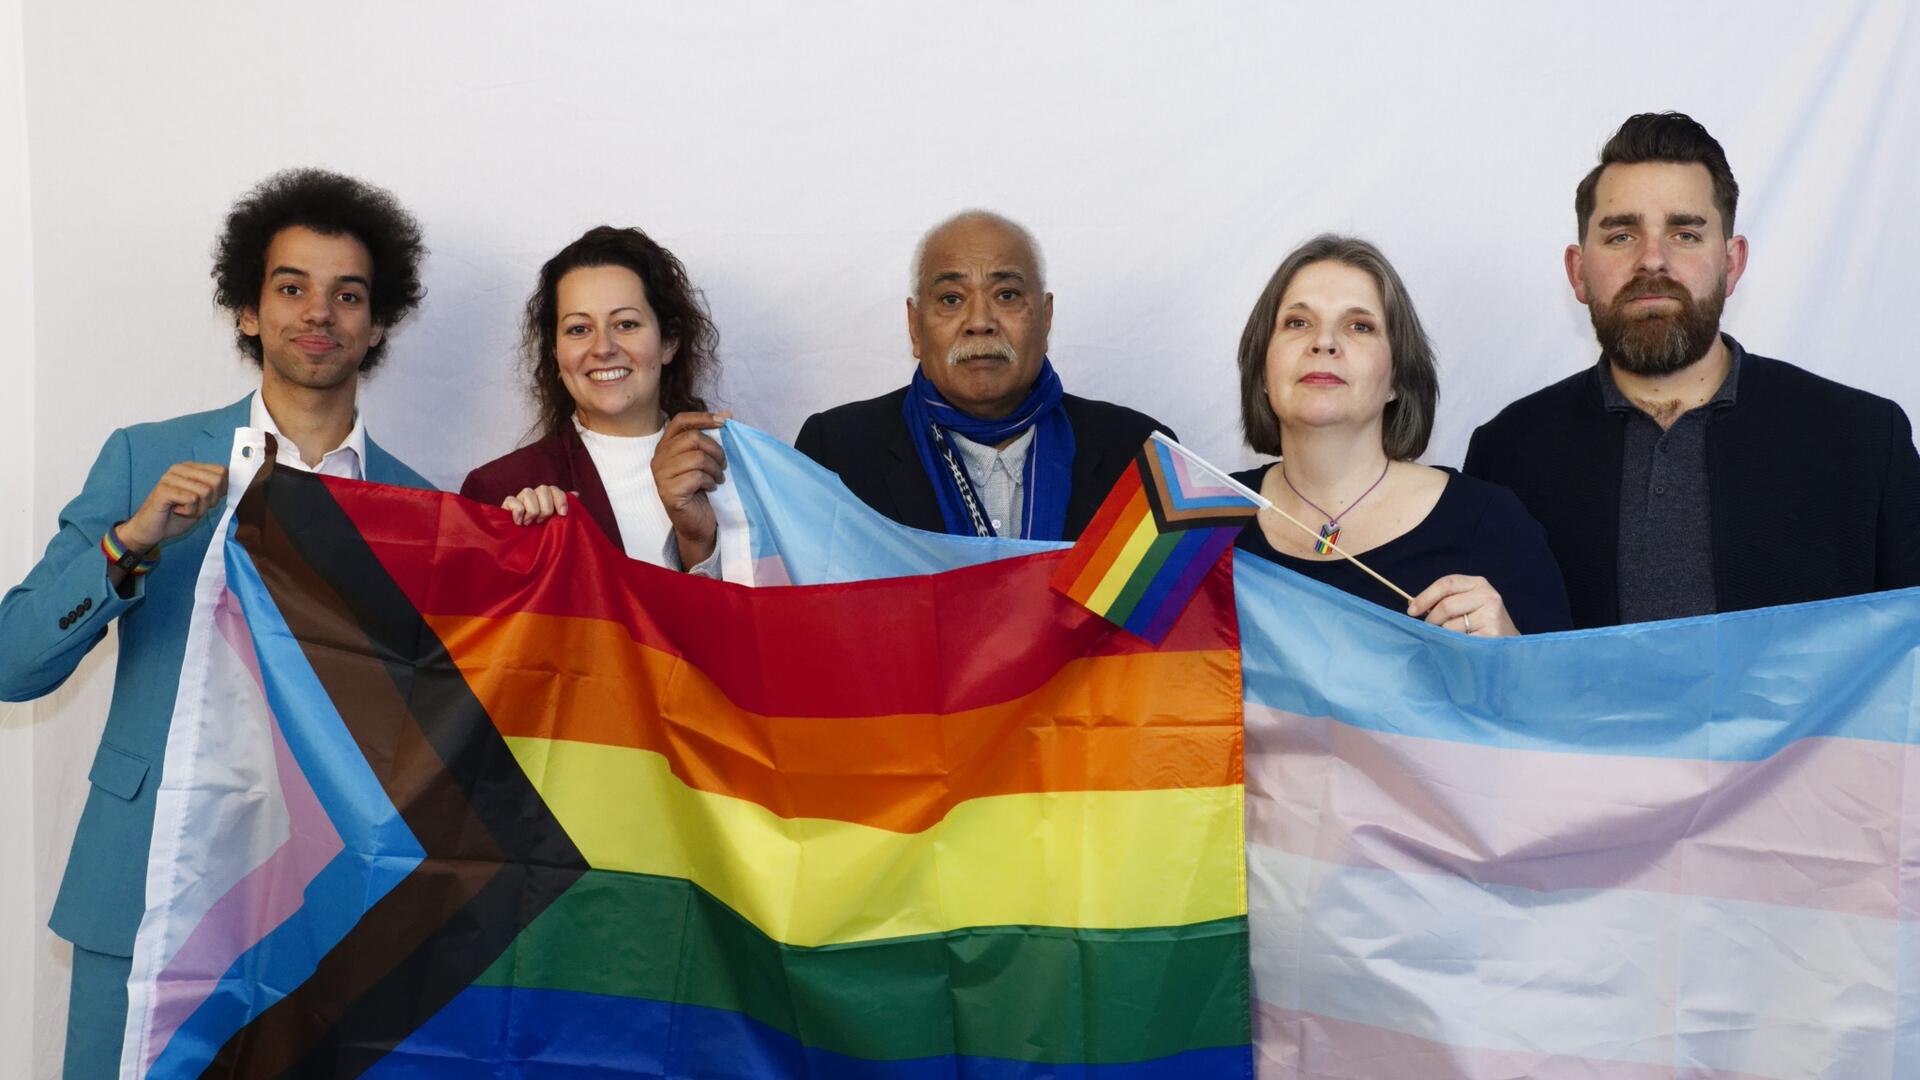 Laat de kleuren van de regenboog stralen! Benide, Mira, Sam, Mireille en Ewoud staan achter de LHBTI+ gemeenschap en laten dit zien door de vlag hoog te houden